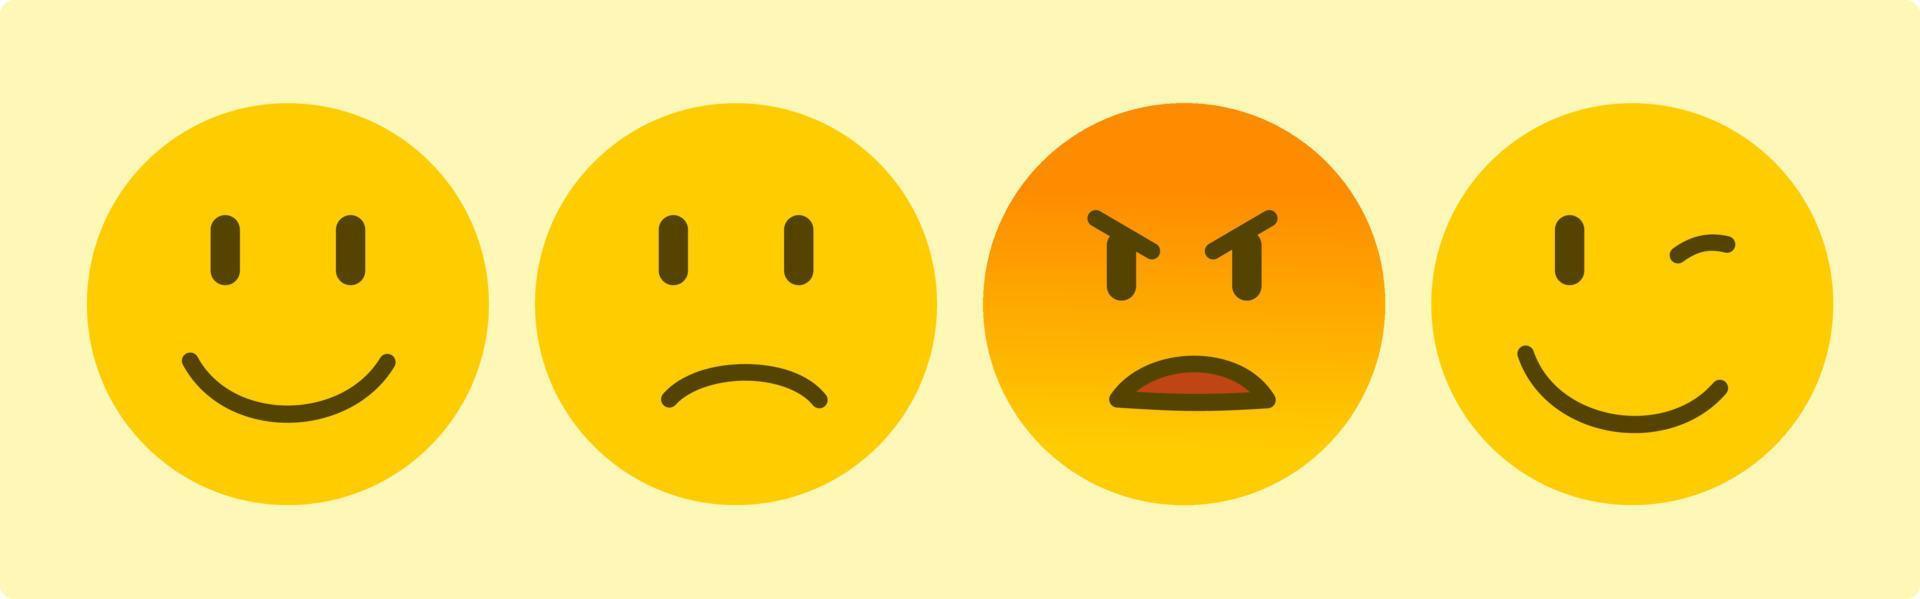 emoticon emoji giallo con quattro emozioni sorriso triste arrabbiato e fiducia vettore icona